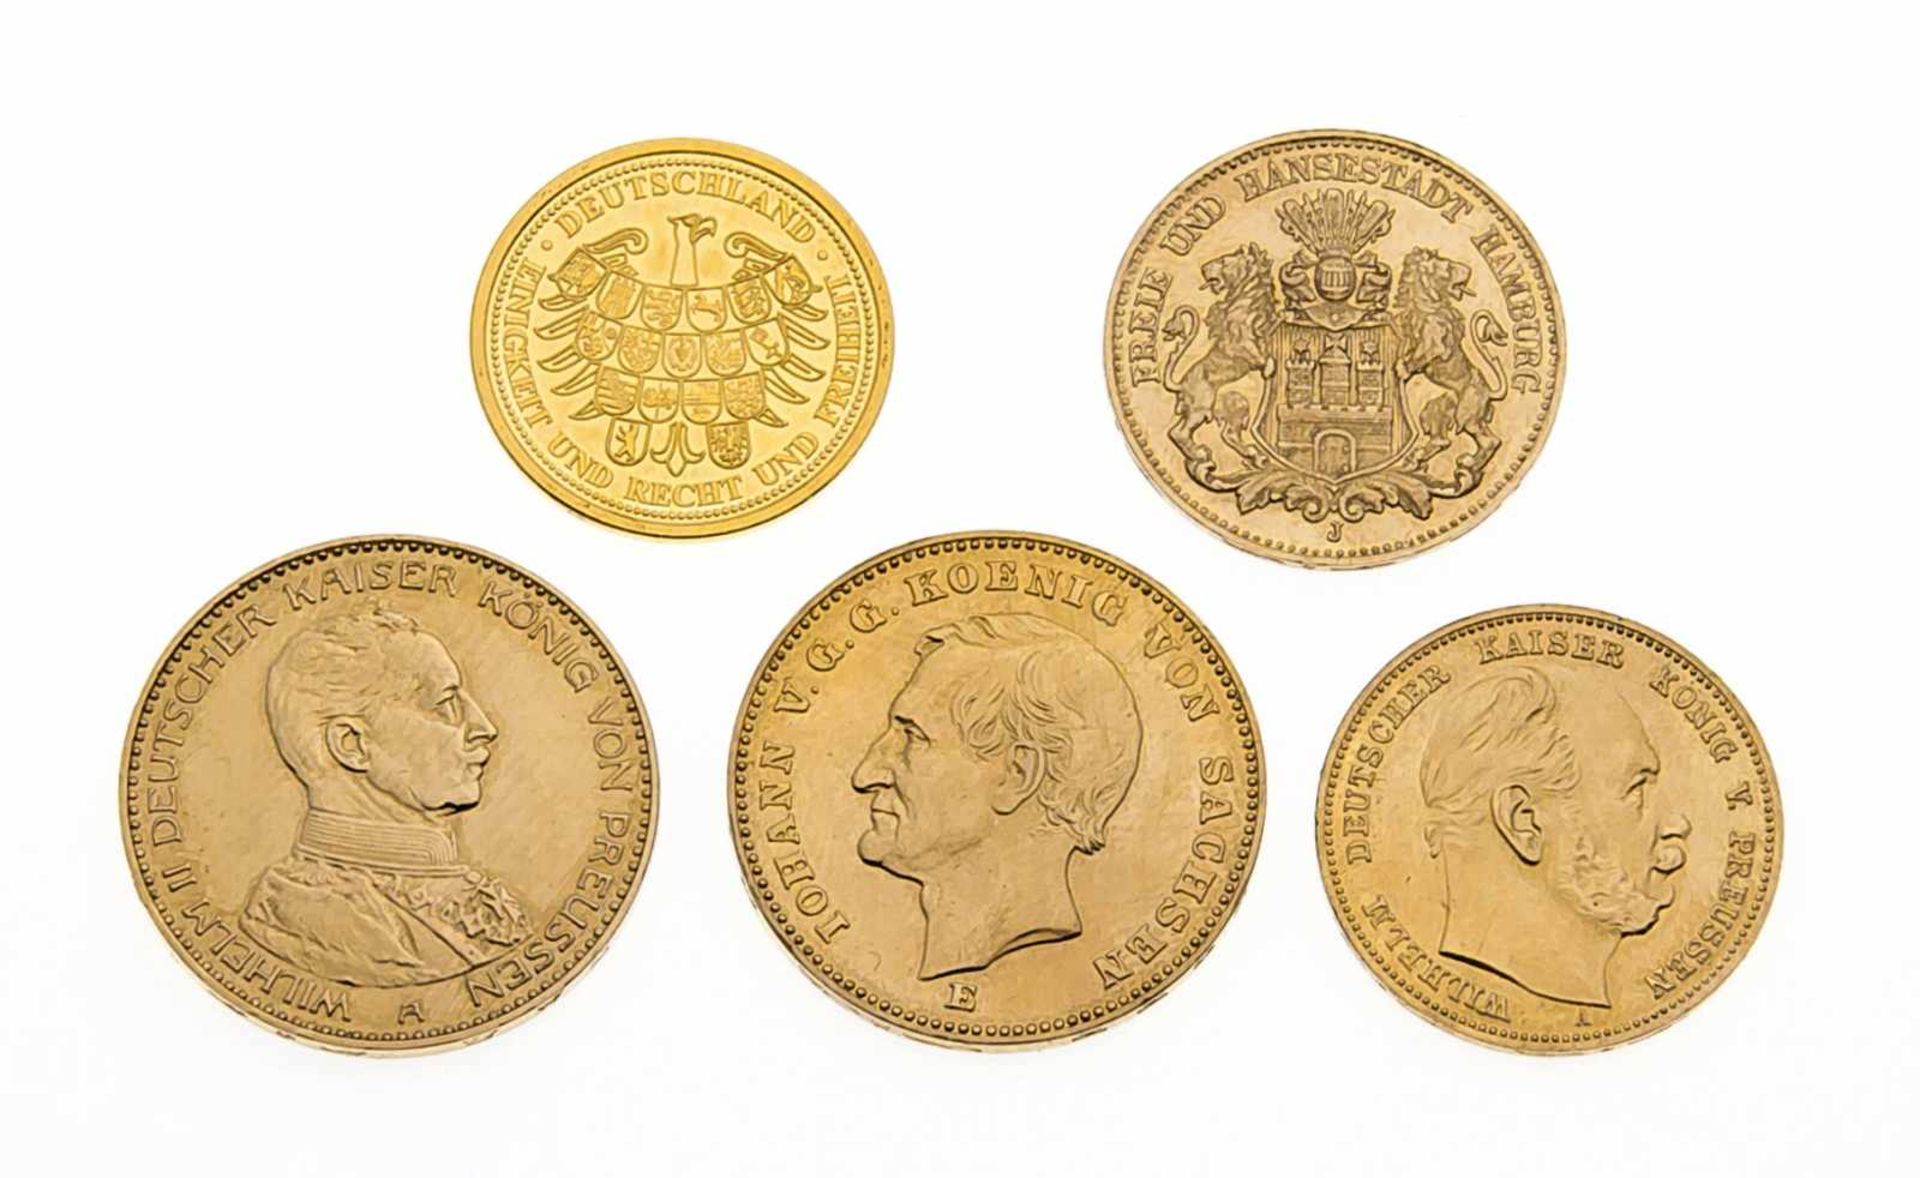 5 Goldmünzen, wohl Nachprägungen. 25,95 g, Dm. 22,5/19,6/17,9 mm- - -22.69 % buyer's premium on